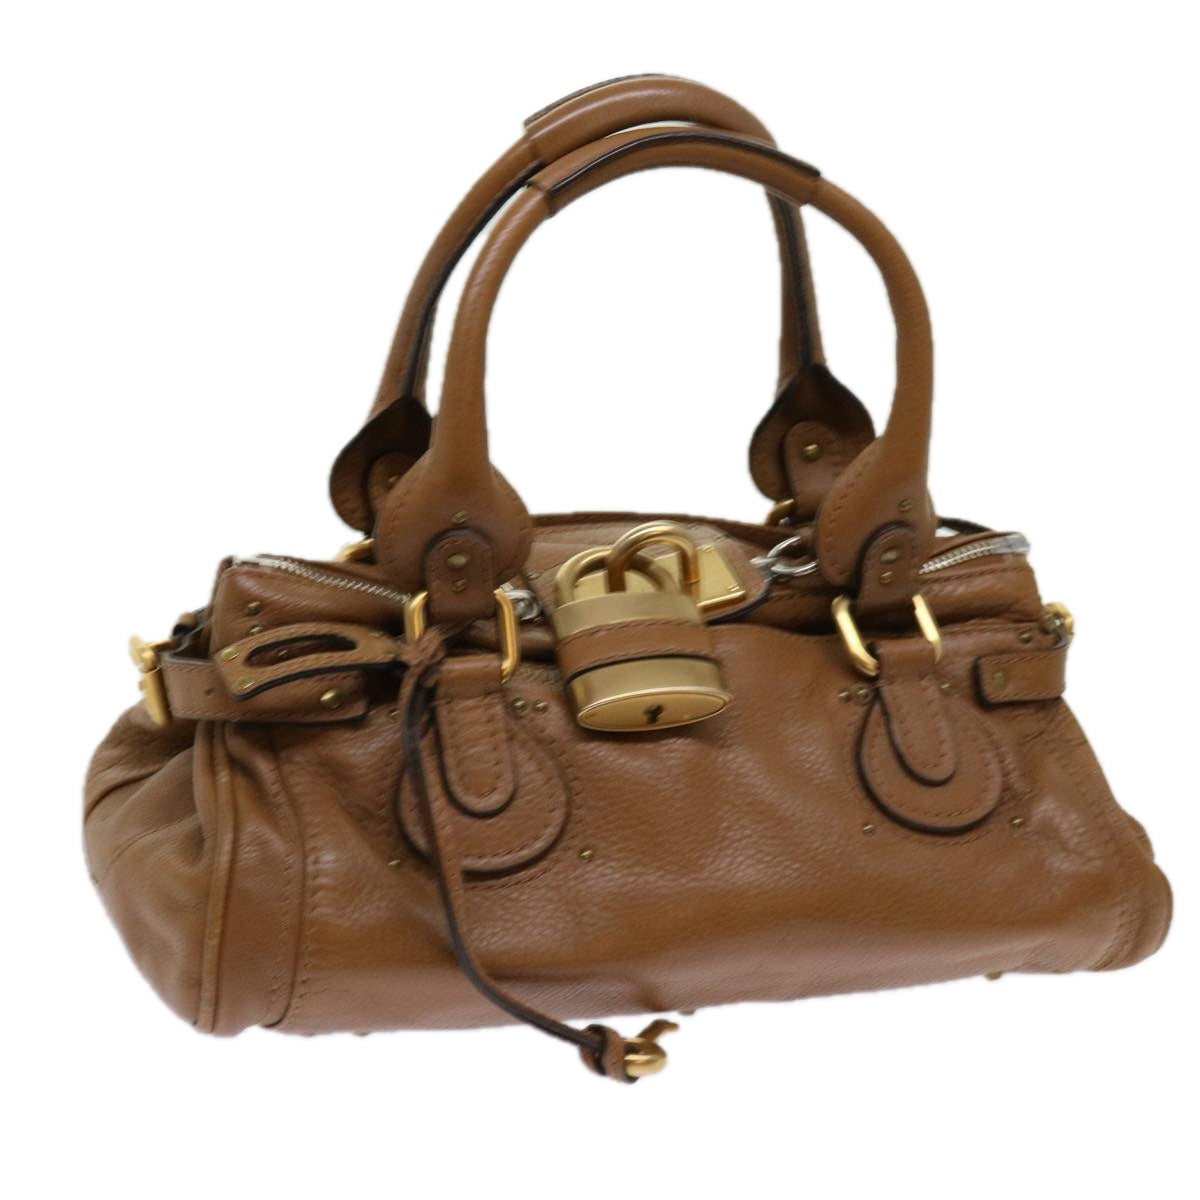 Chloe Paddington Hand Bag Leather Brown 01 09 51 5191 Auth bs10726